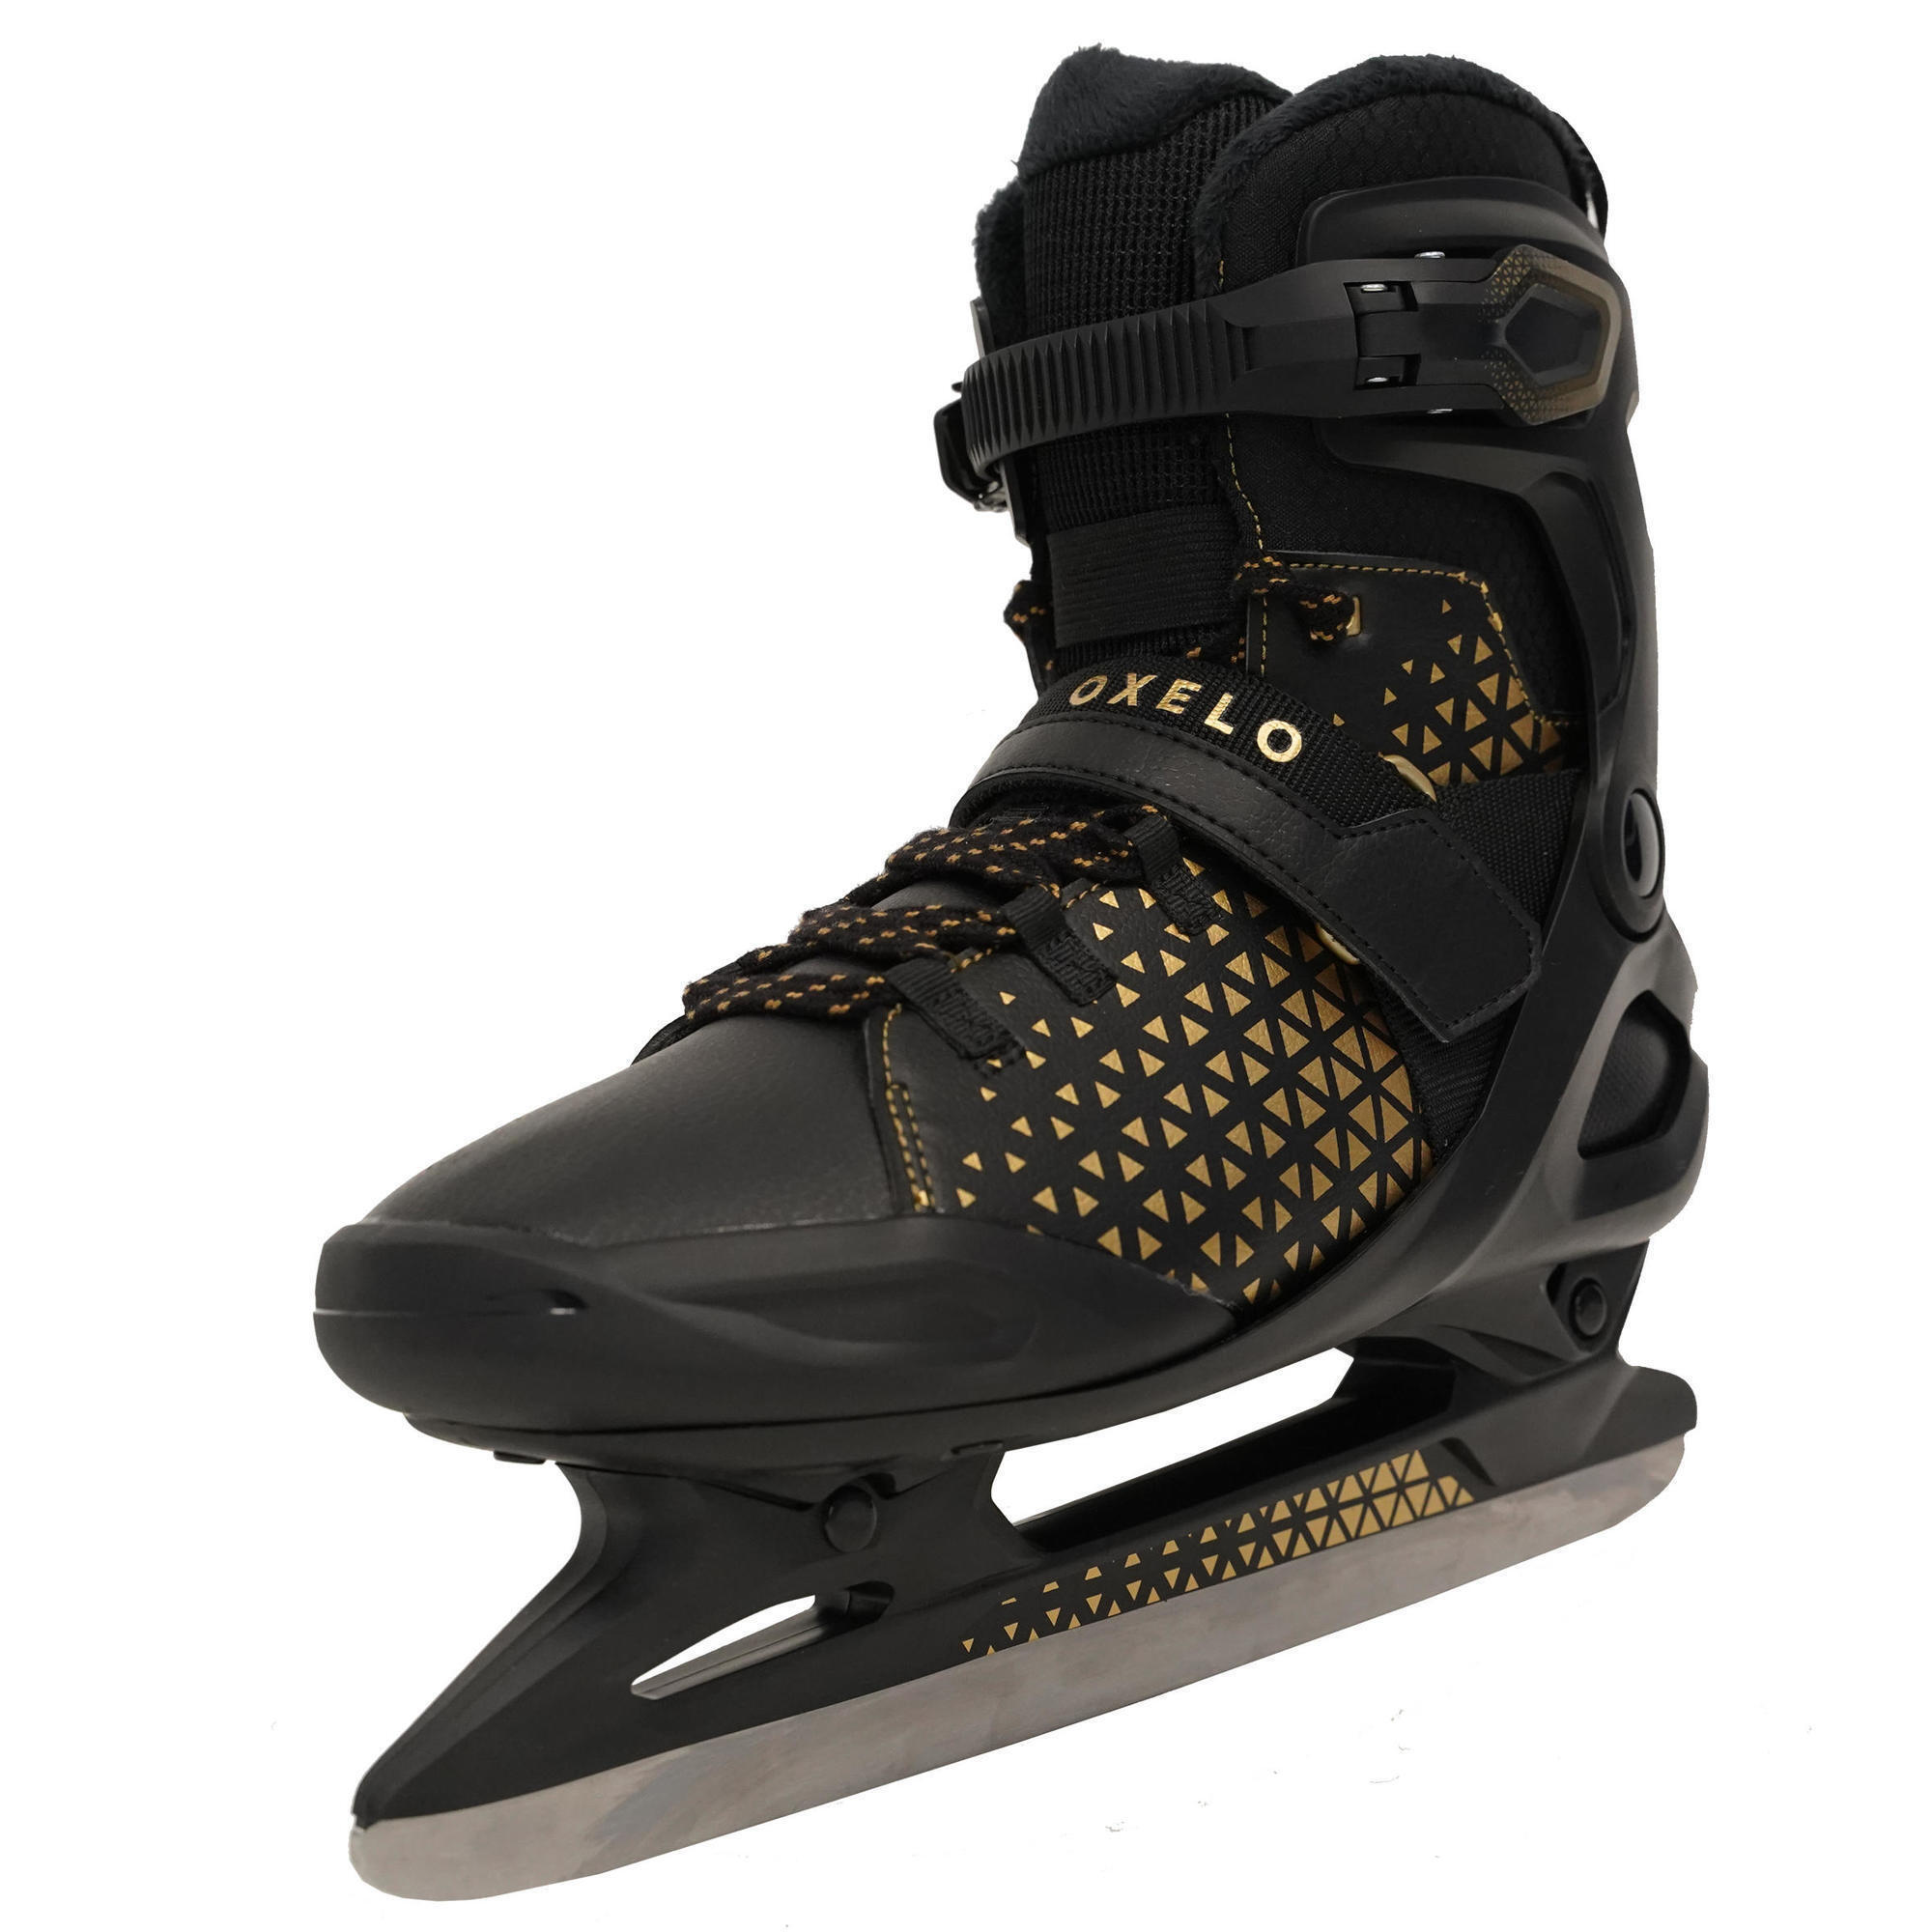 Adult Unisex Ice Skates Fit 520 Warm - Black 2/10